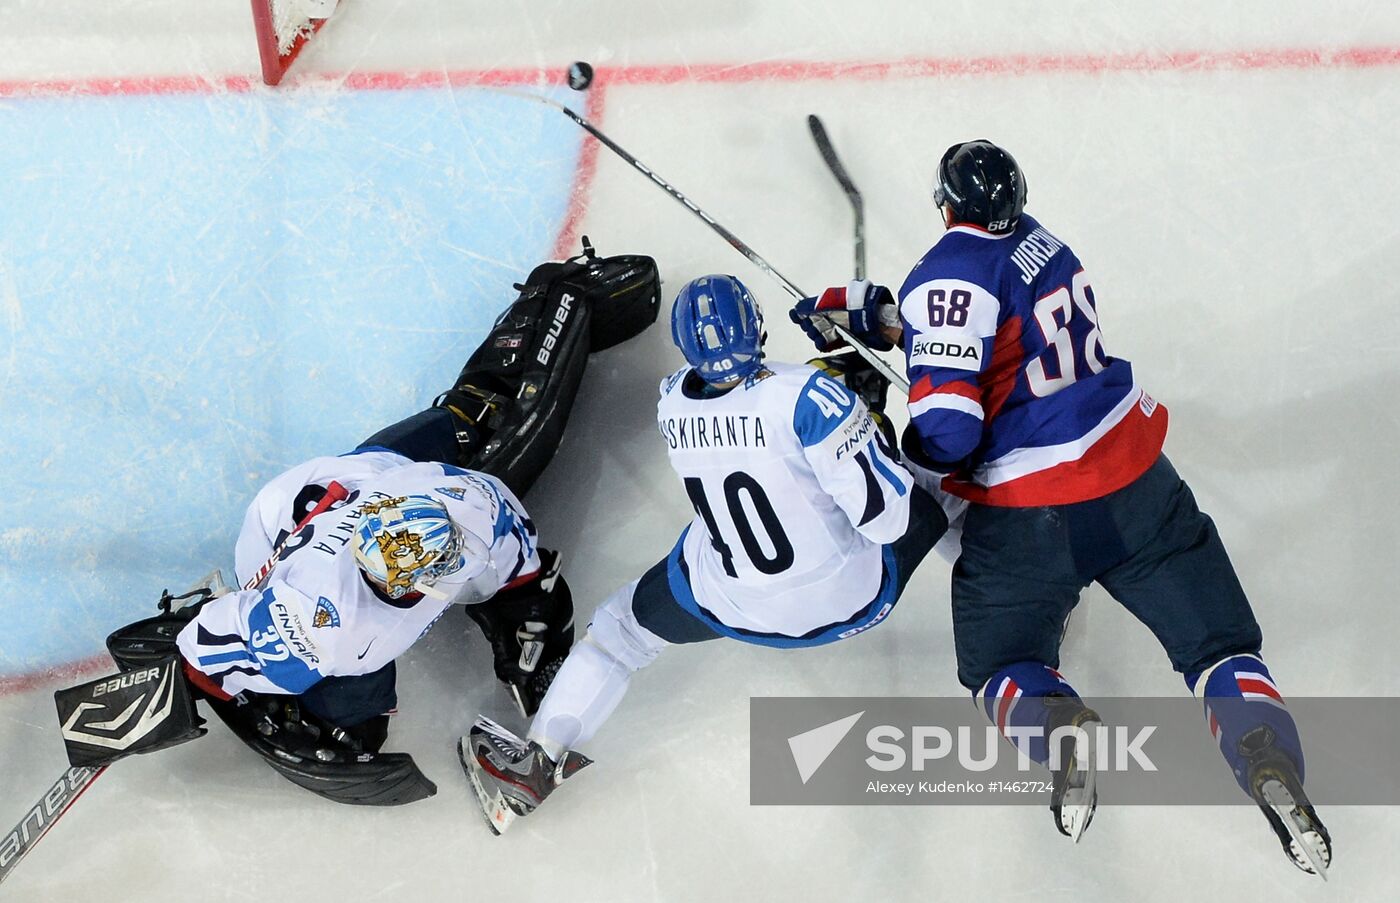 Men's World Ice Hockey Championships. Finland vs. Slovakia